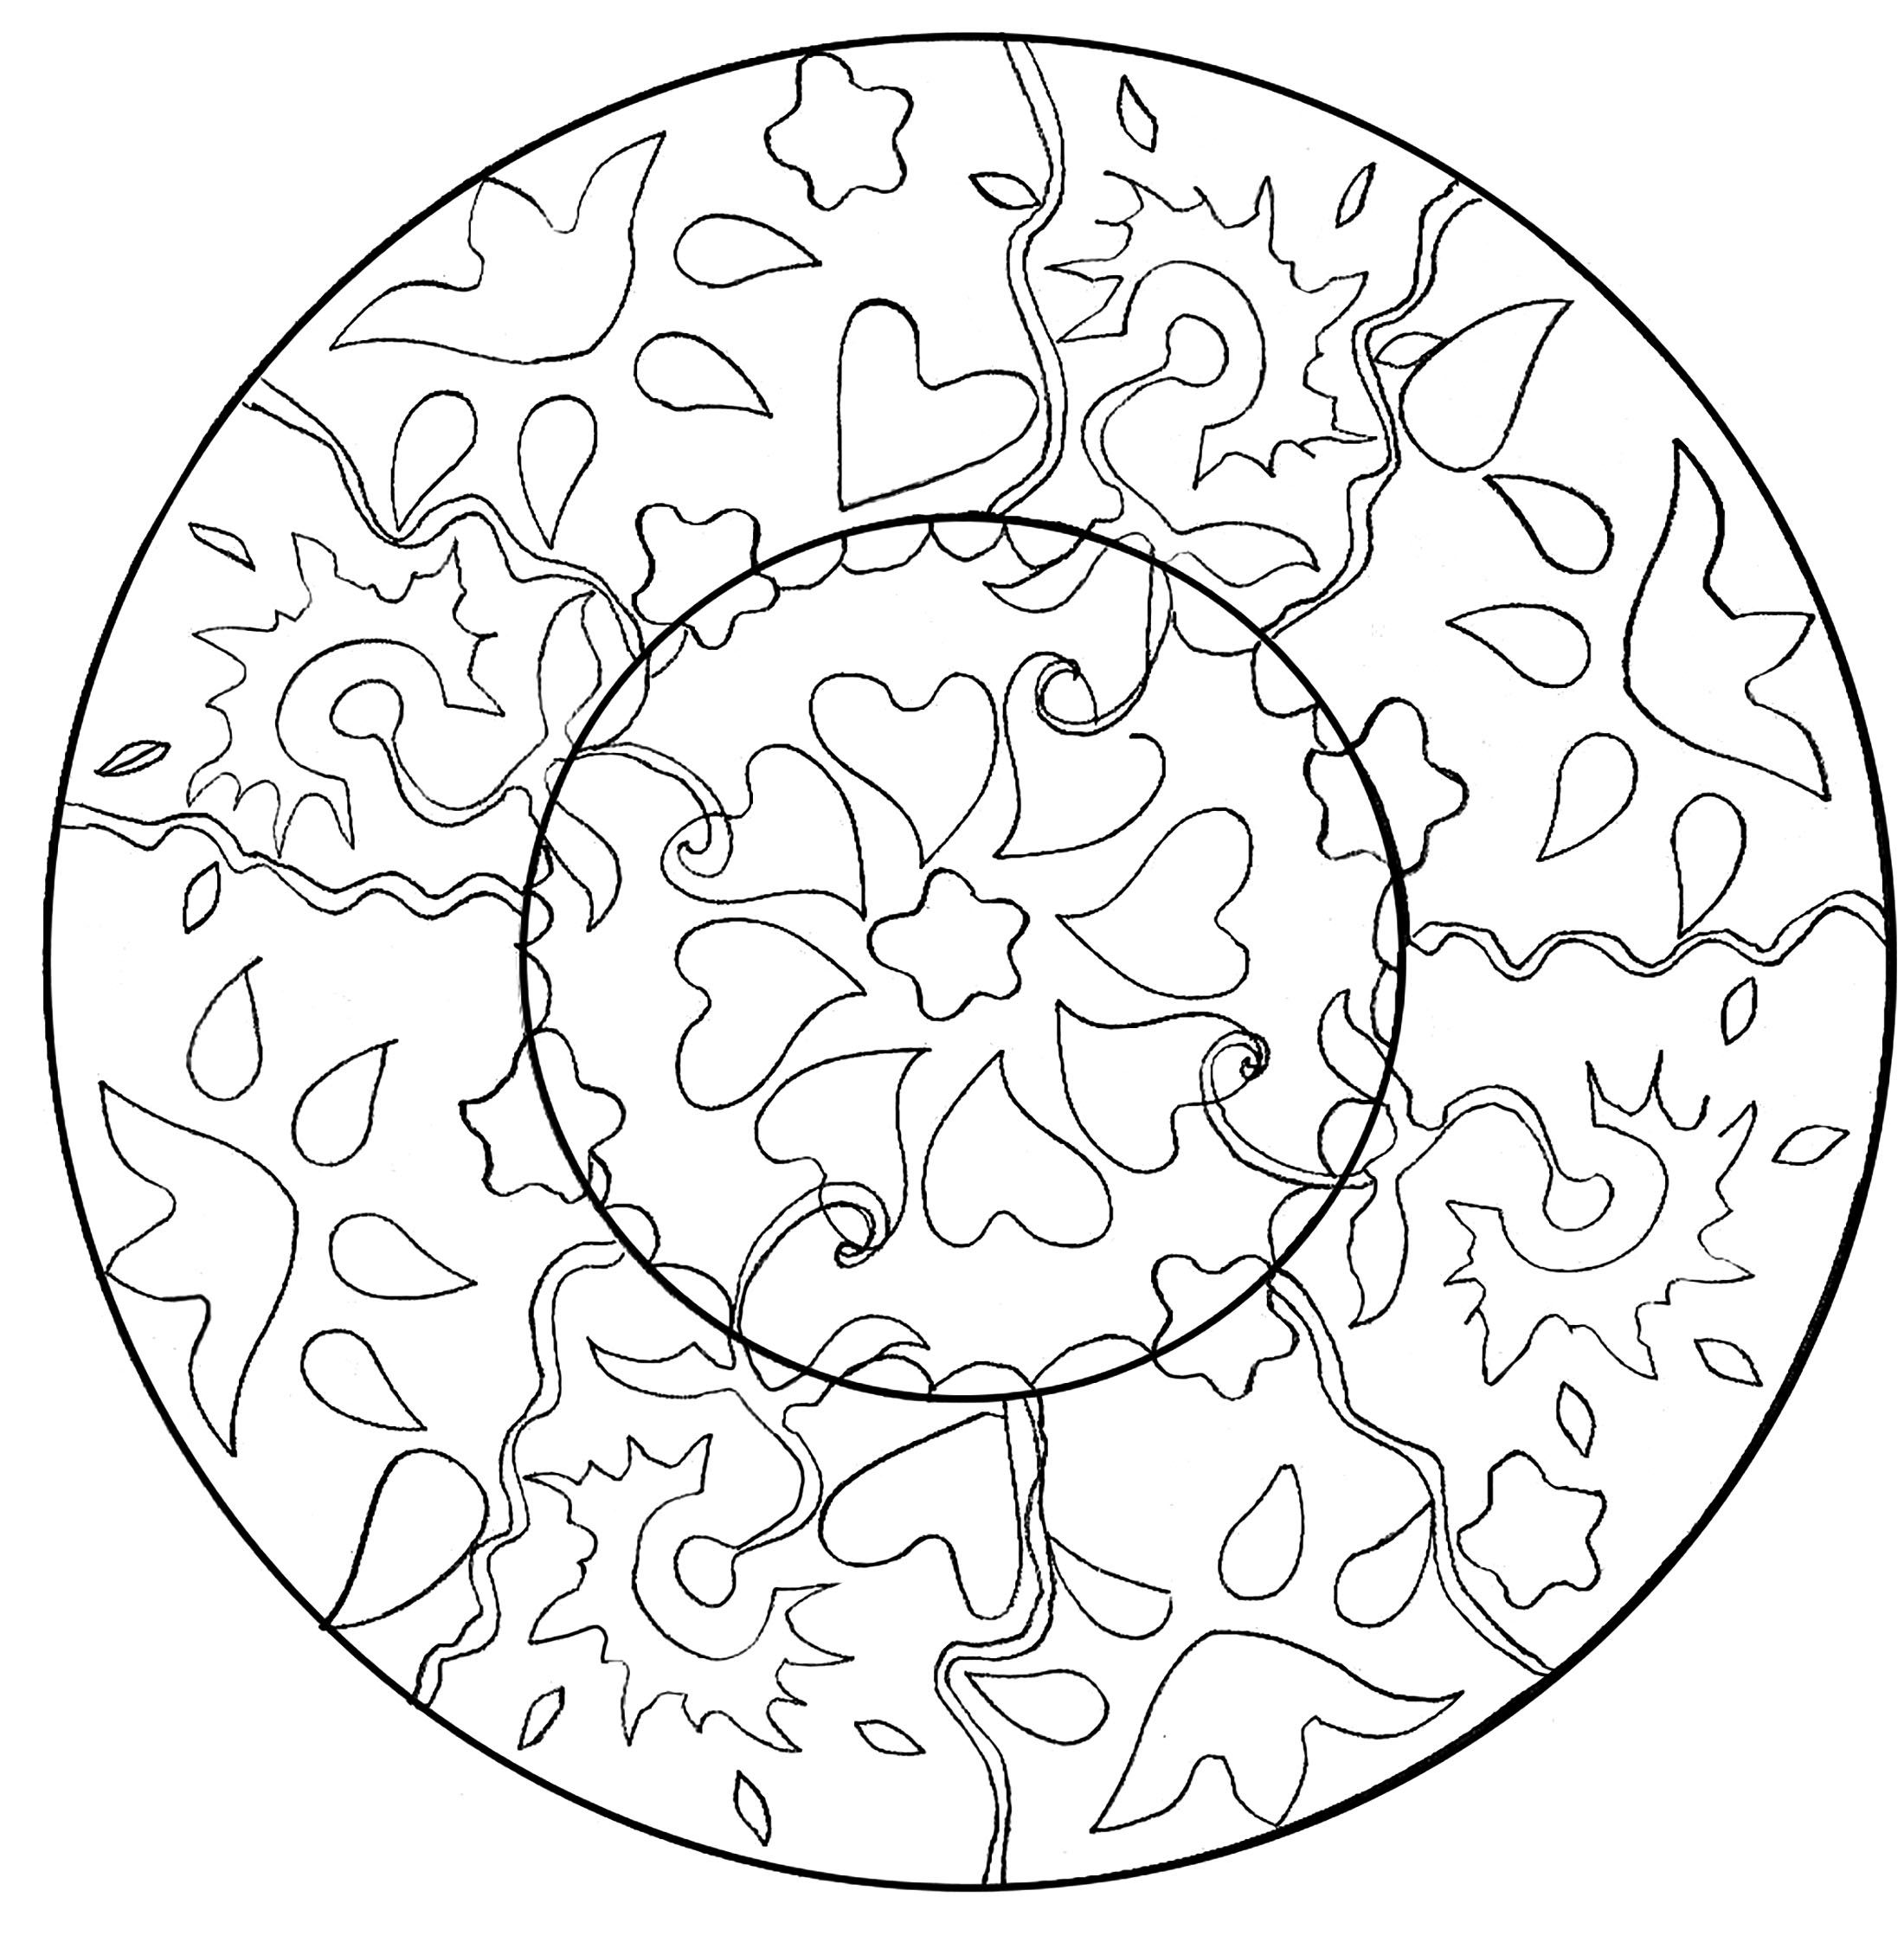 Desenho de Mandala de arte visual para Colorir - Colorir.com